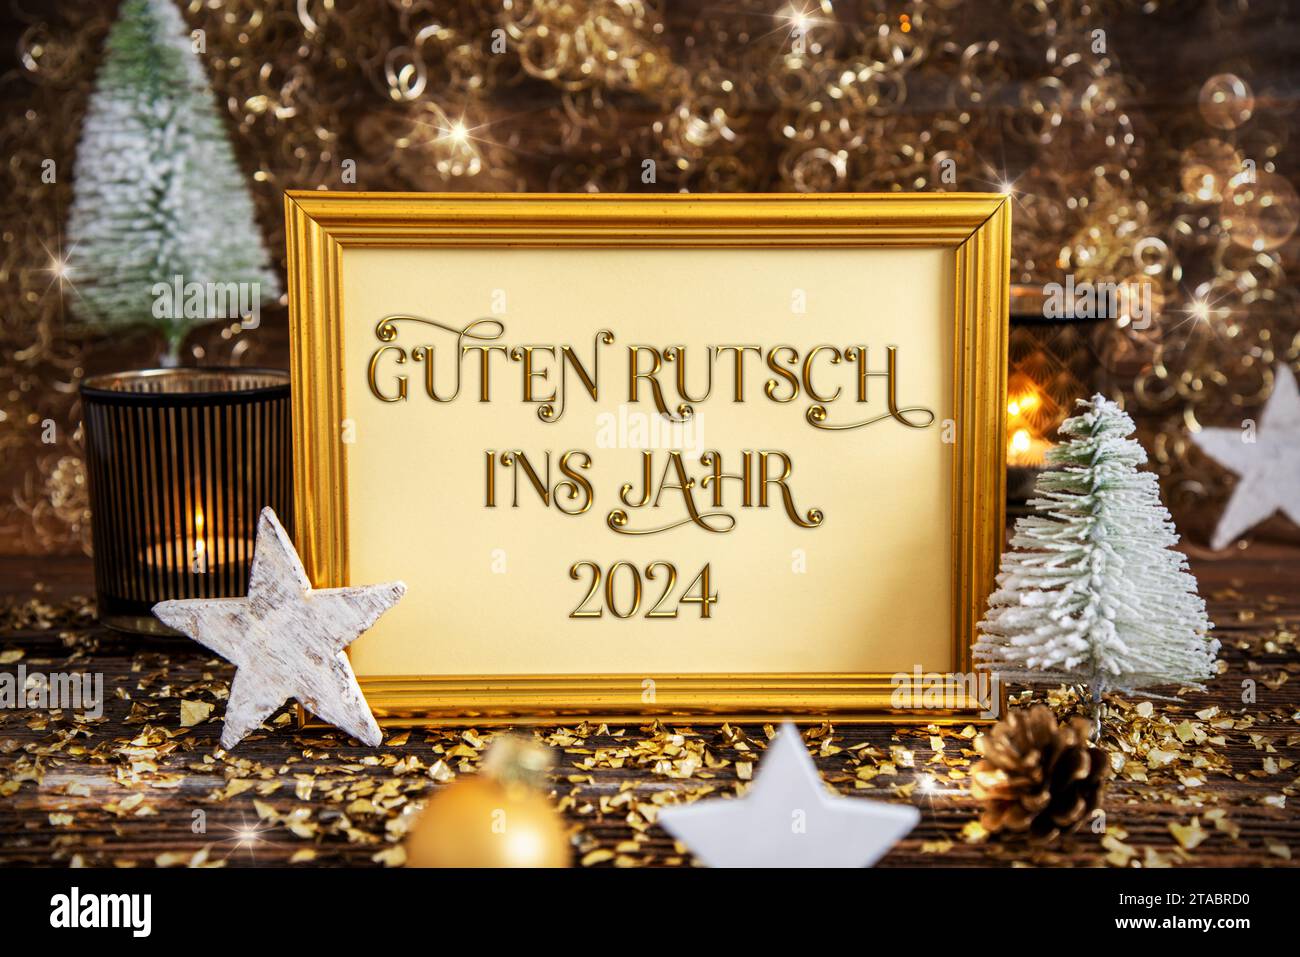 Cadre Guten Rutsch 2024, signifie heureux 2024, Décoration dorée de Noël Banque D'Images